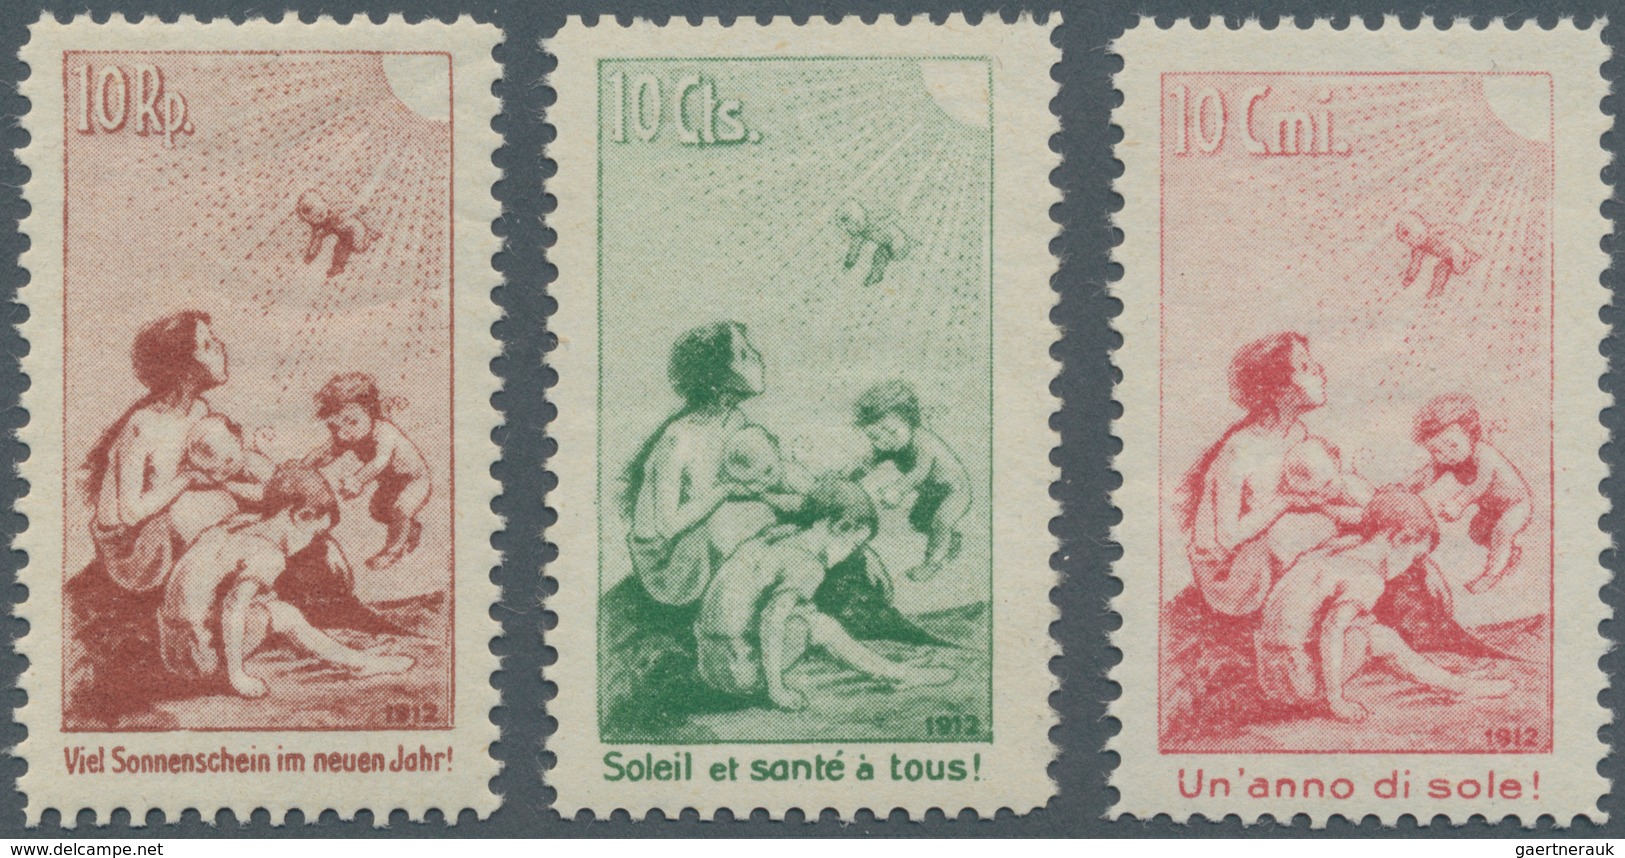 Schweiz: 1912 Pro Juventute-Vorläufer: Kompletter Satz Der Drei Marken, Tadellos Postfrisch, Attest - Neufs